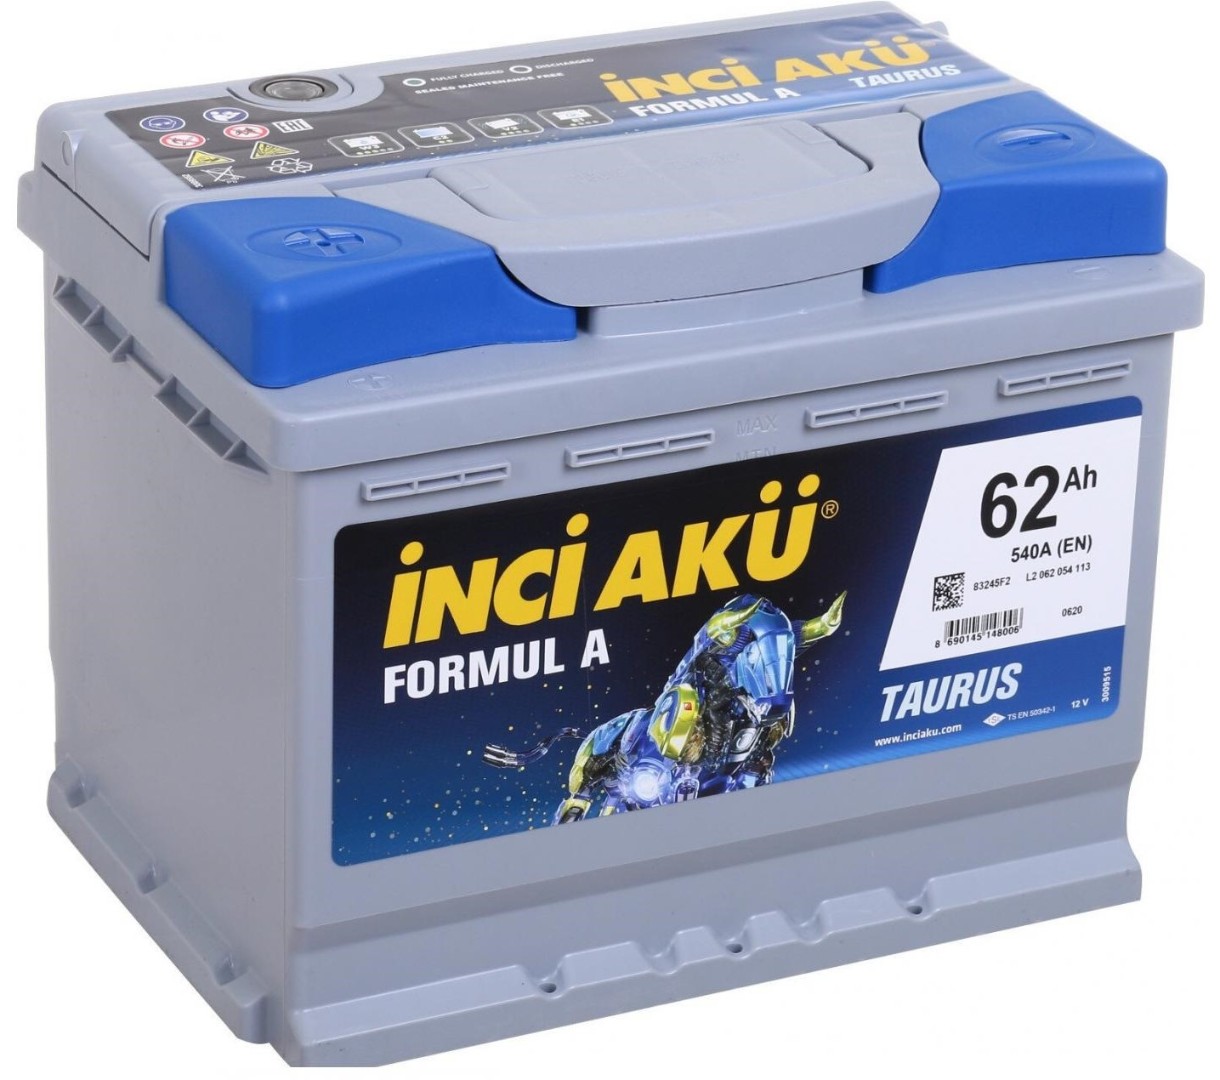 Автомобильный аккумулятор Inci Aku Formul A (L2 062 054 113)